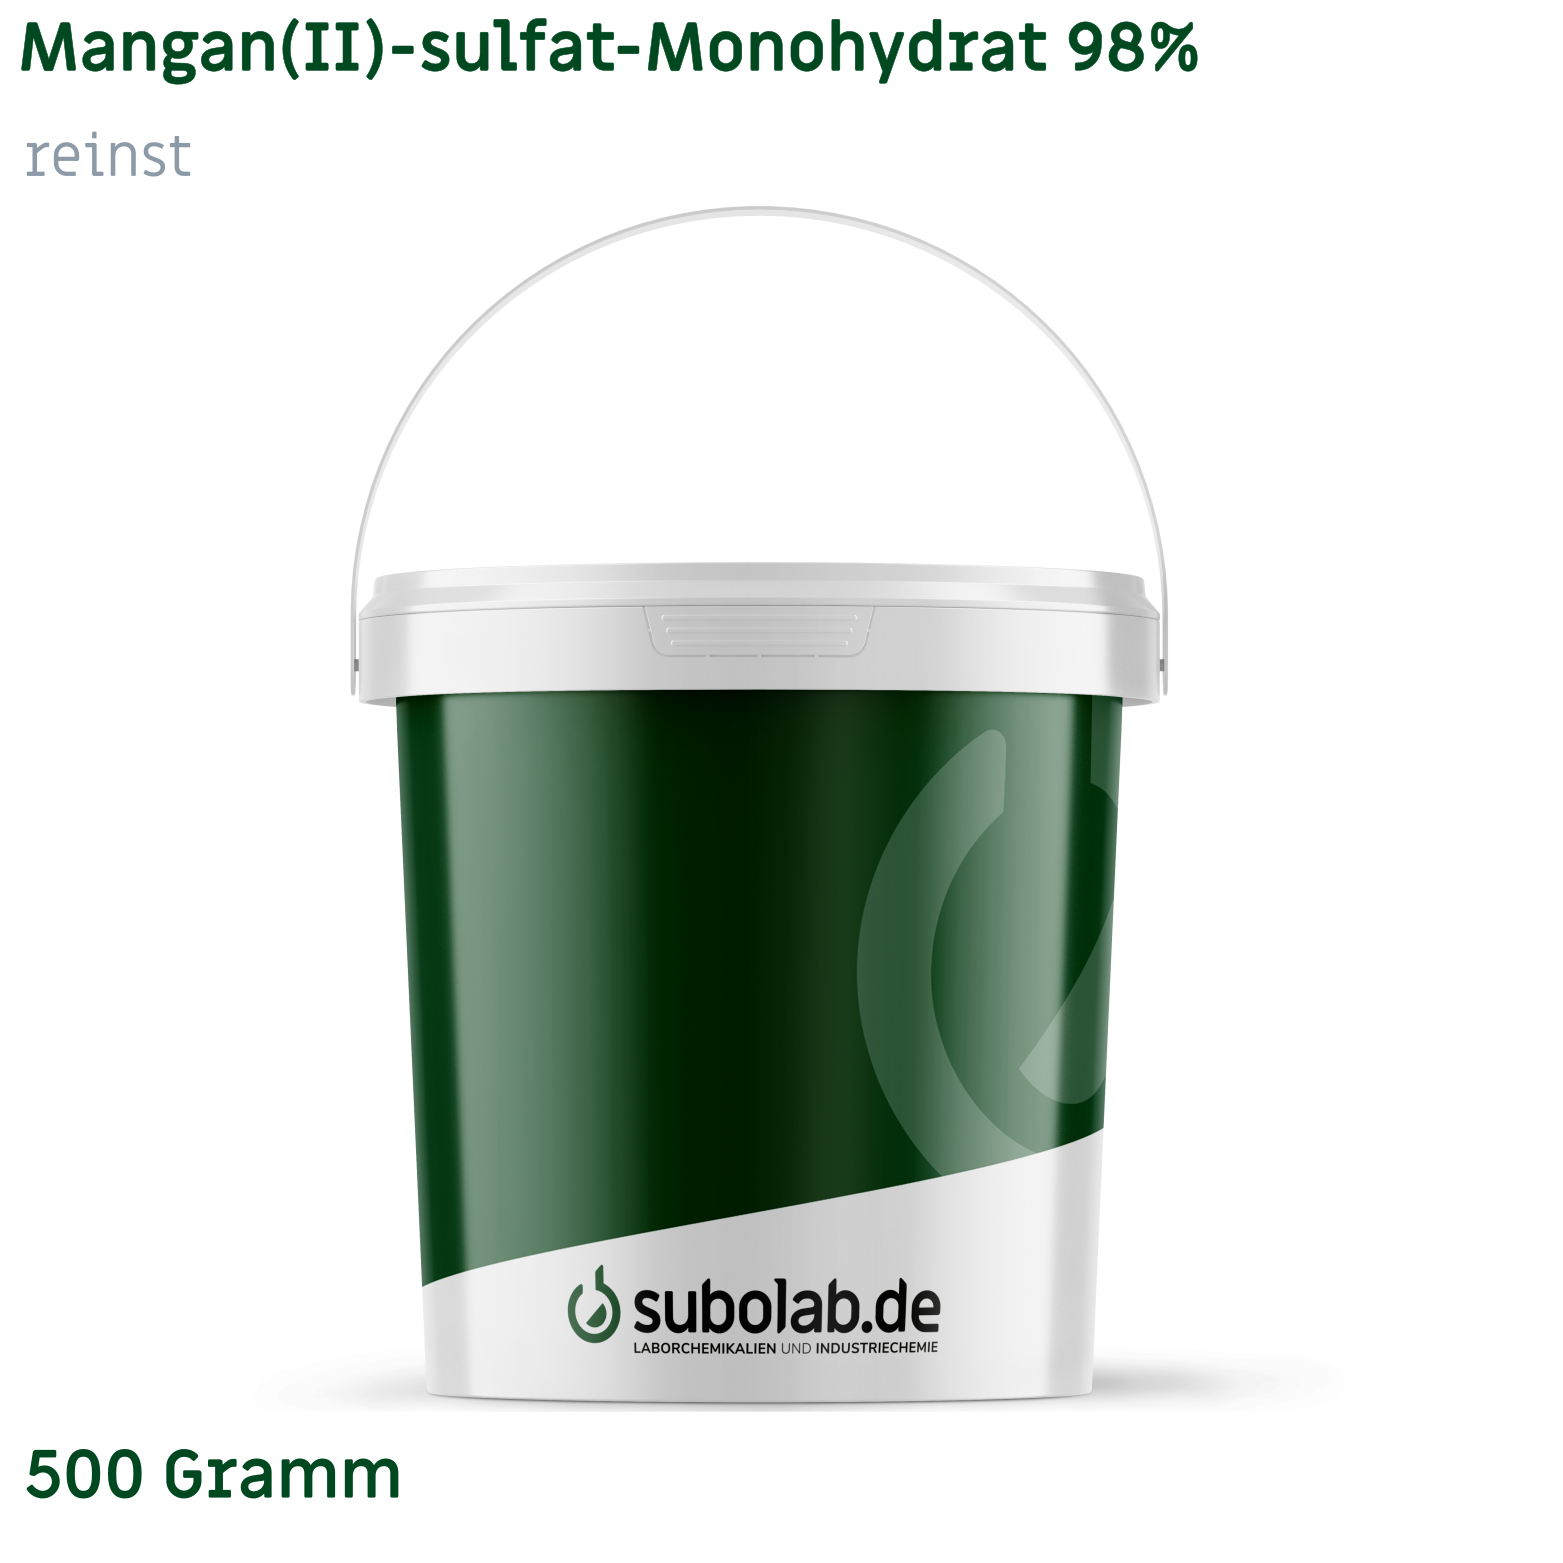 Bild von Mangan(II)-sulfat - Monohydrat 98% reinst (500 Gramm)